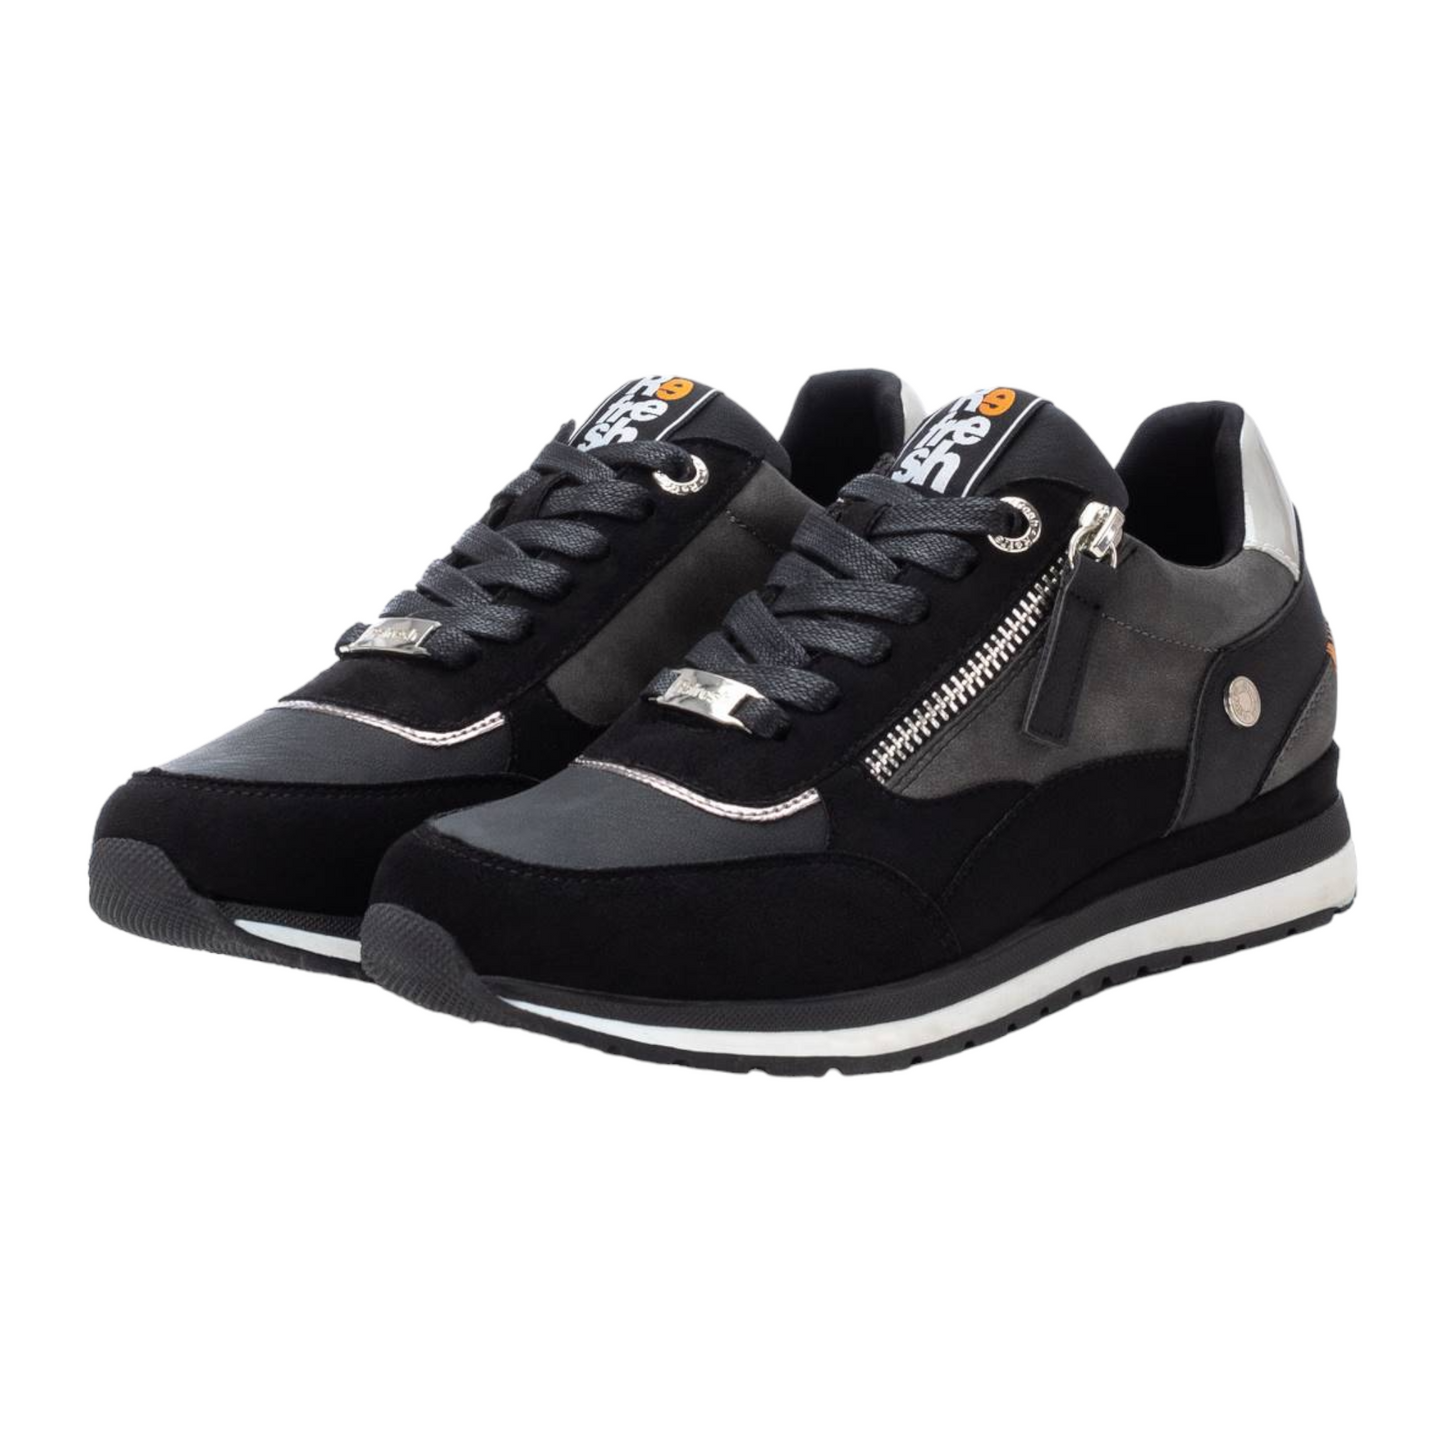 Zapatilla Sneakers Cordones Negro Refresh 17140102